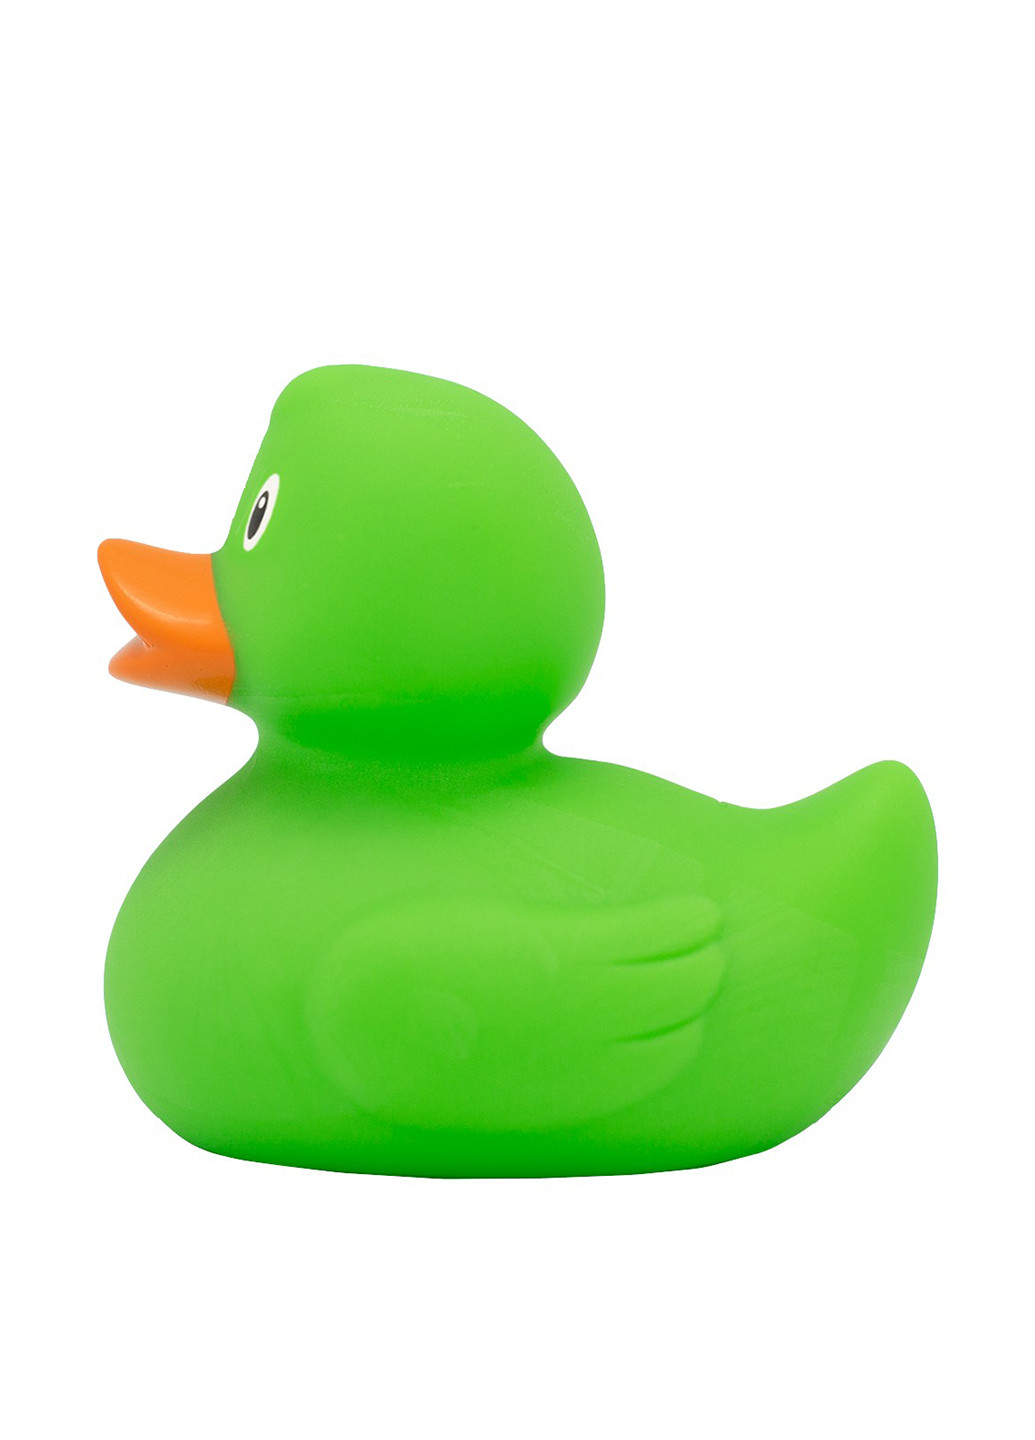 Игрушка для купания Утка Зеленая, 8,5x8,5x7,5 см Funny Ducks (250618758)